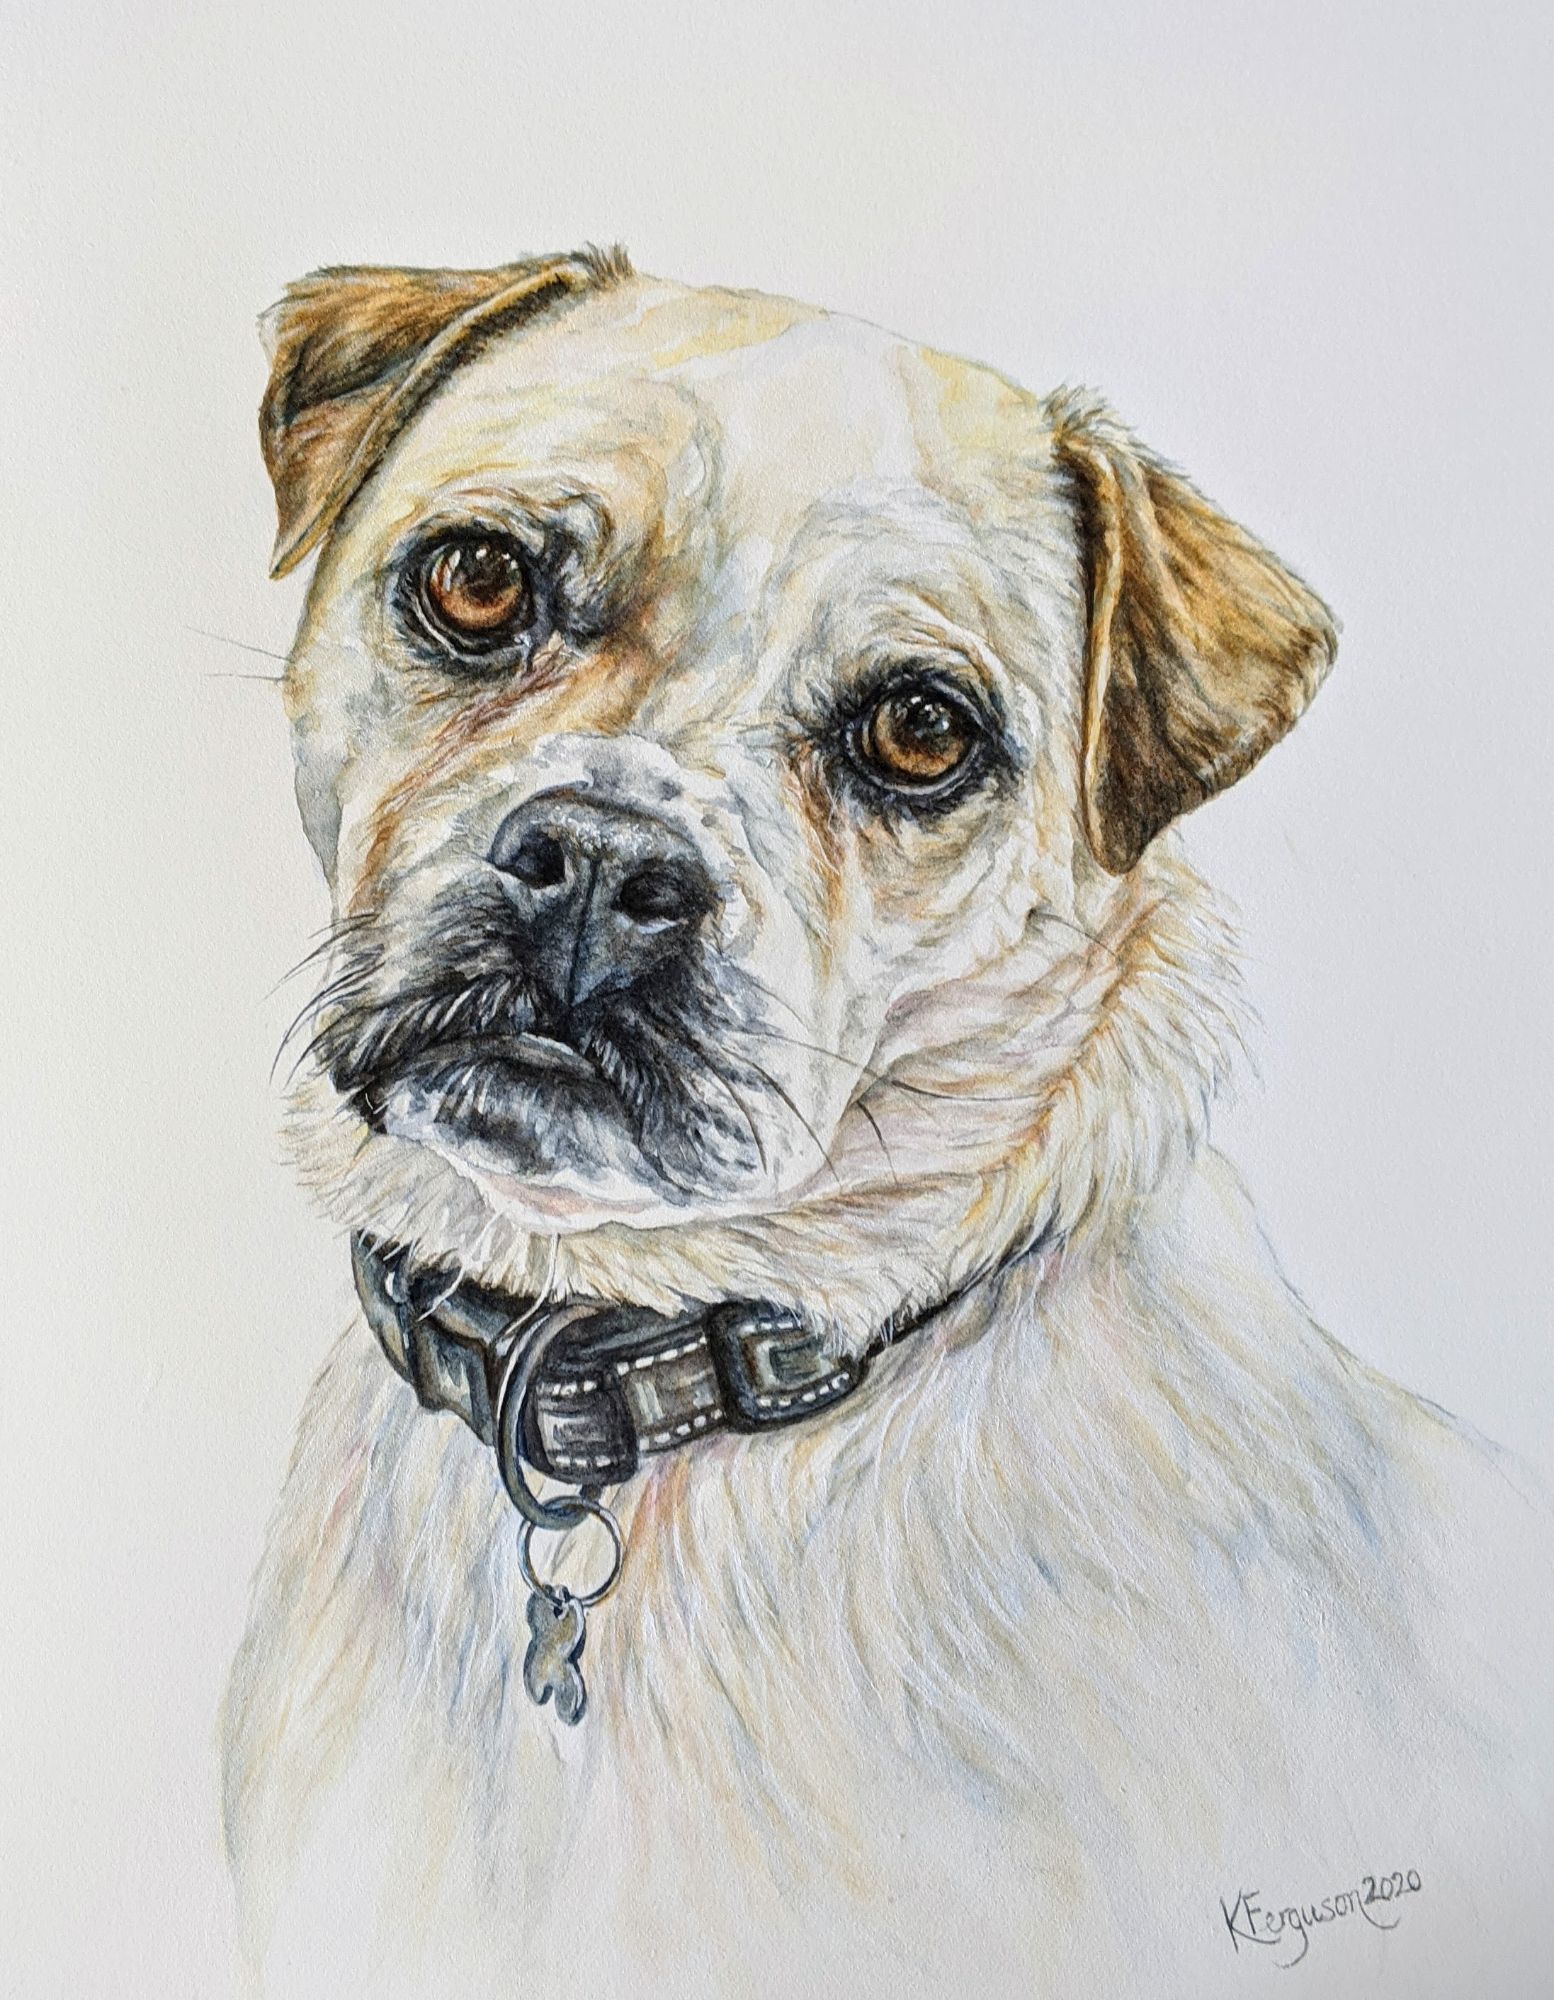 Watercolour & ink dog portrait